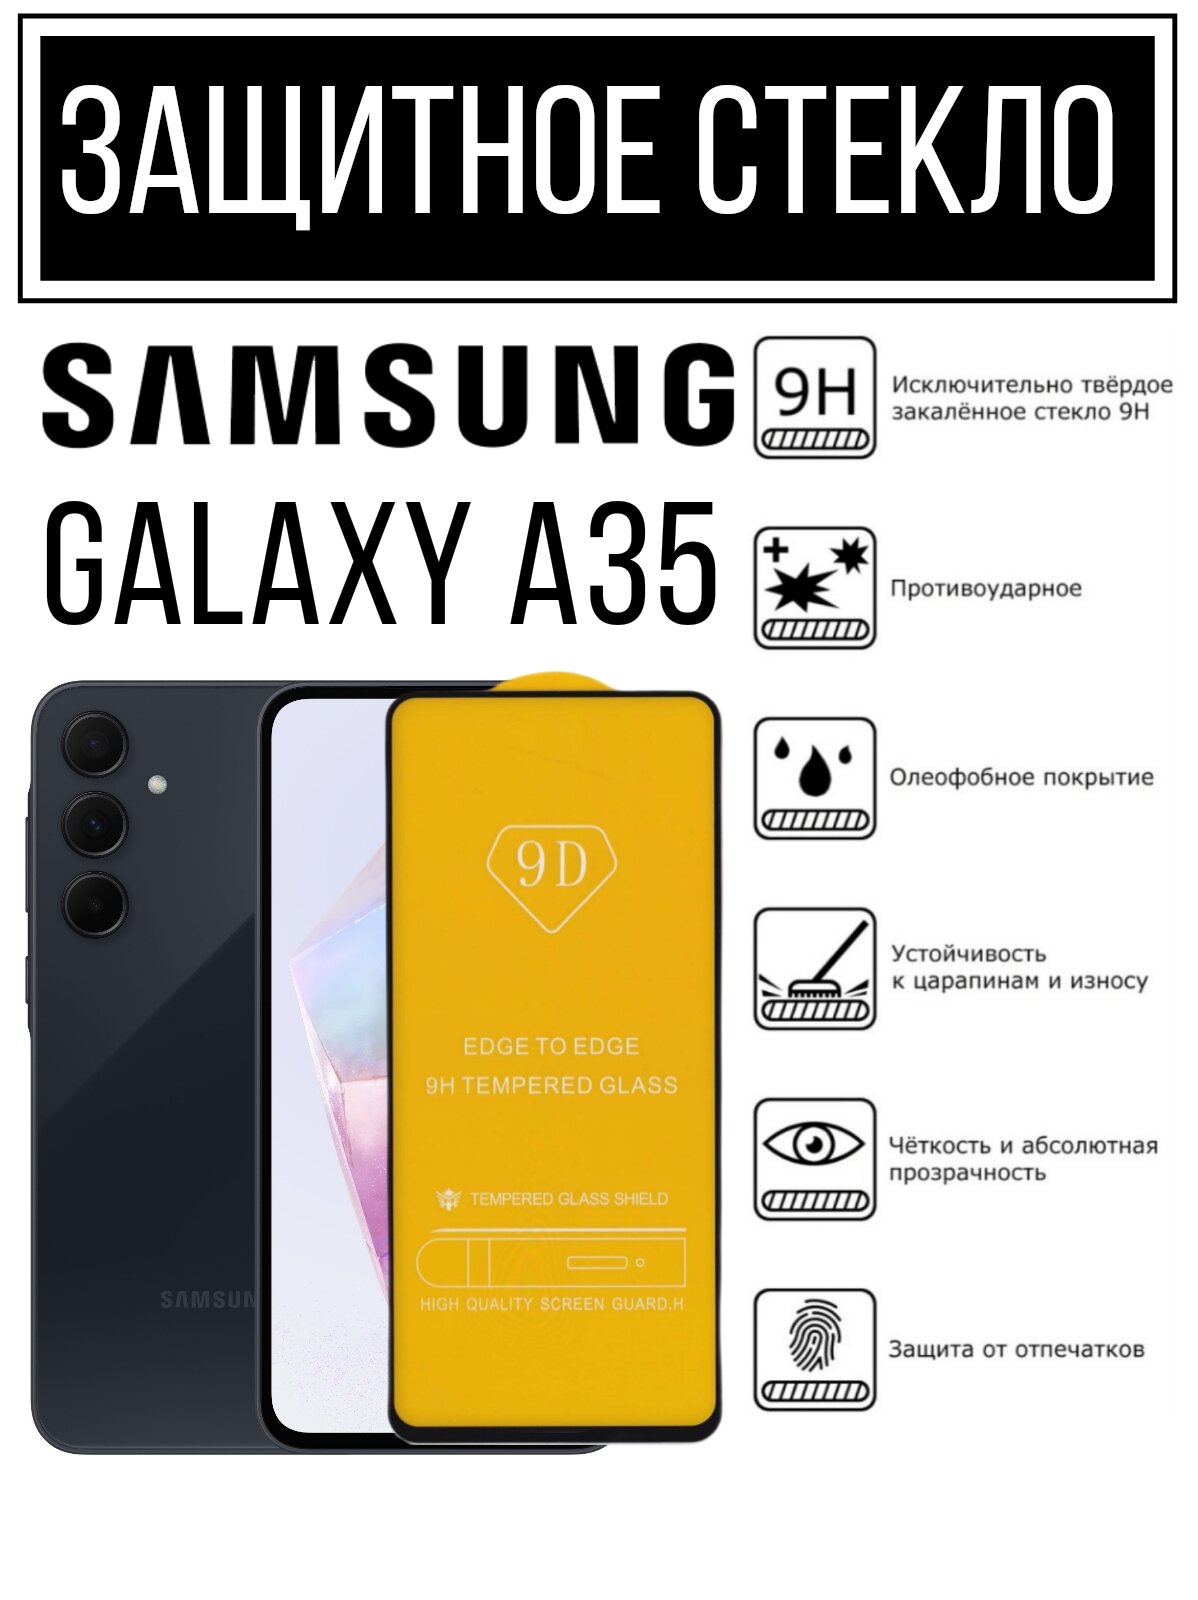 Противоударное закалённое защитное стекло для смартфонов Samsung Galaxy A35/ Самсунг Галакси А35